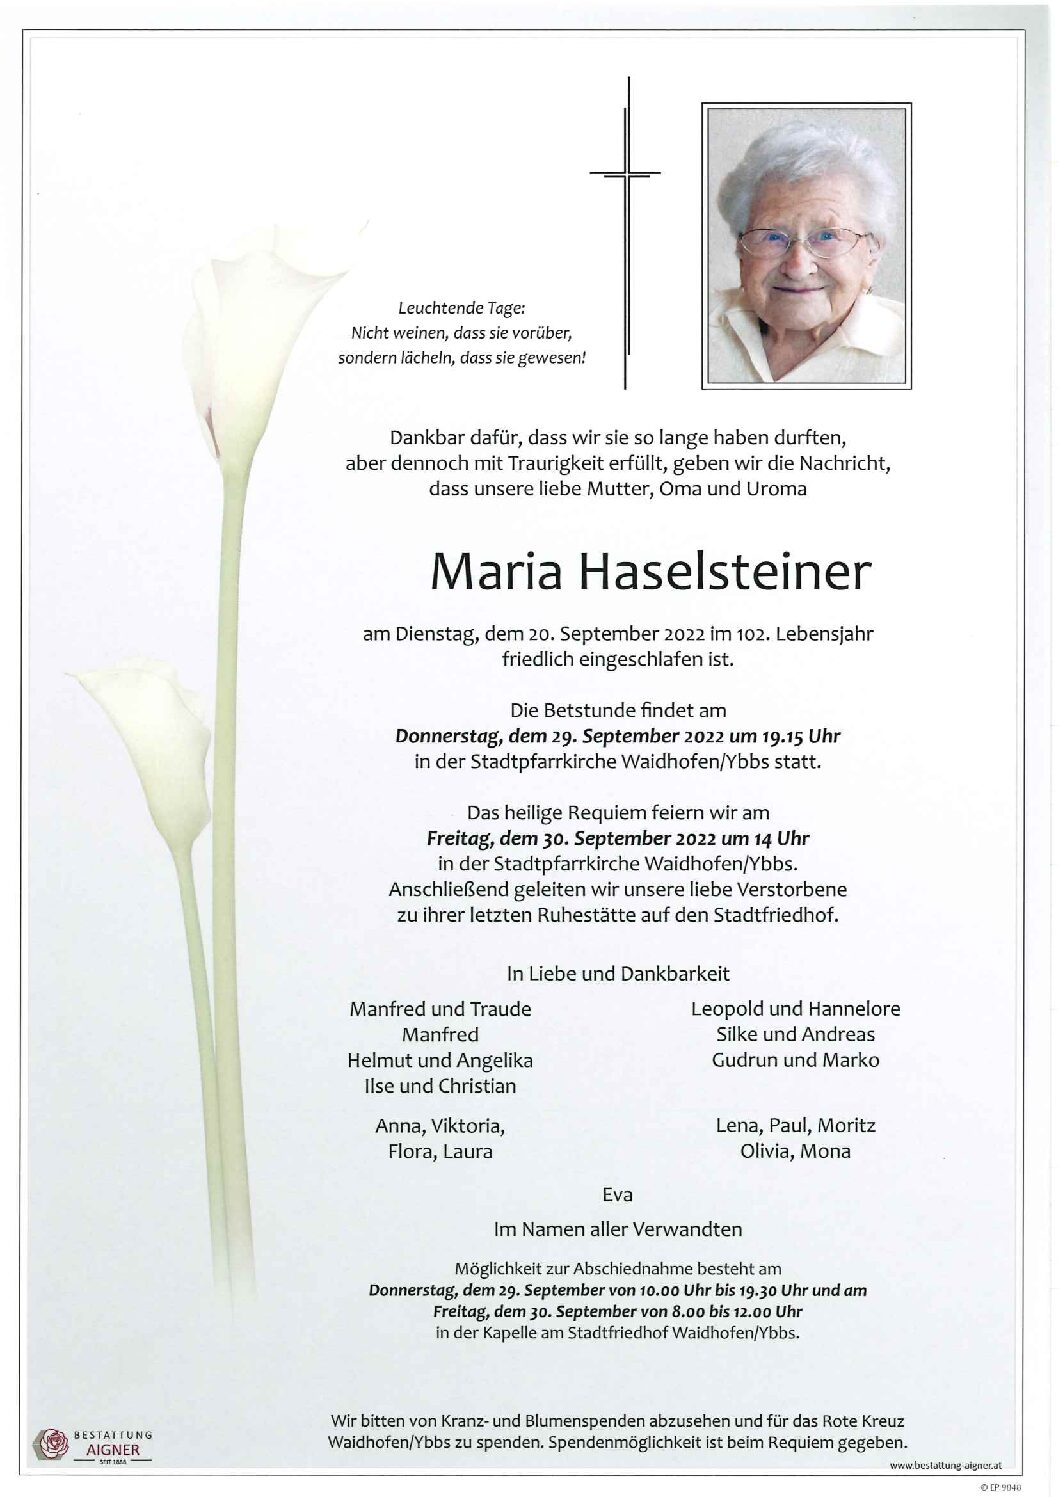 Maria Haselsteiner